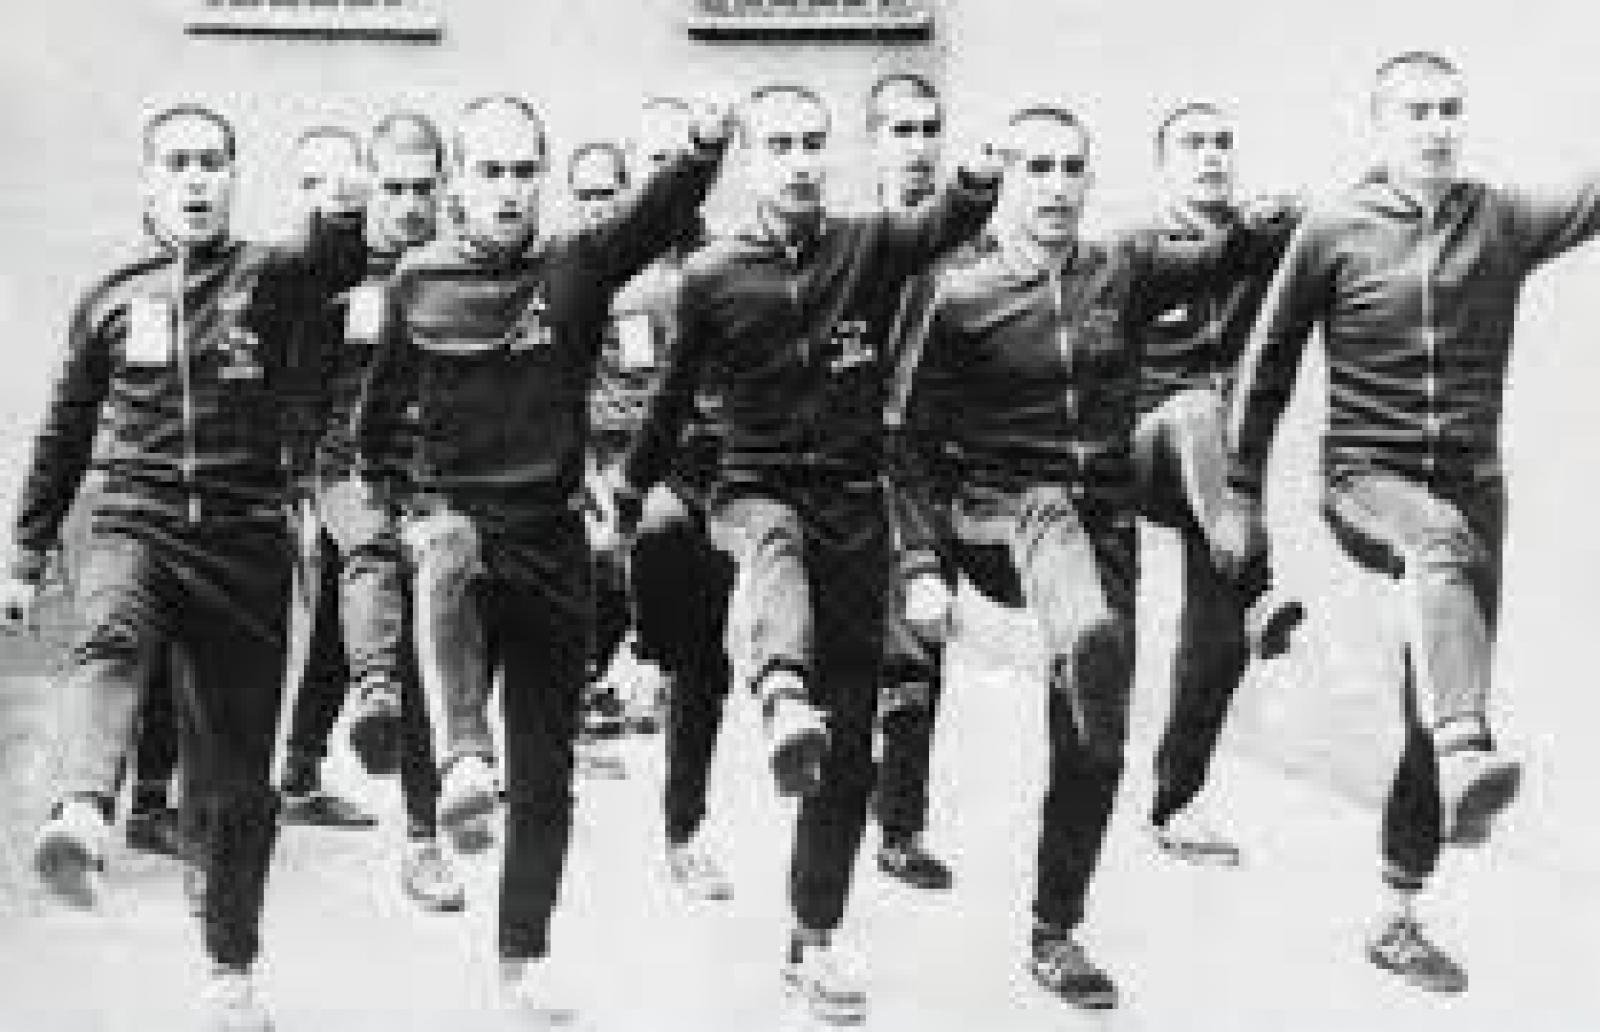  سُجناء يخضعونَ للتدريب العسكري الإجباري، ما بينَ العامَيْن 1980 و1984